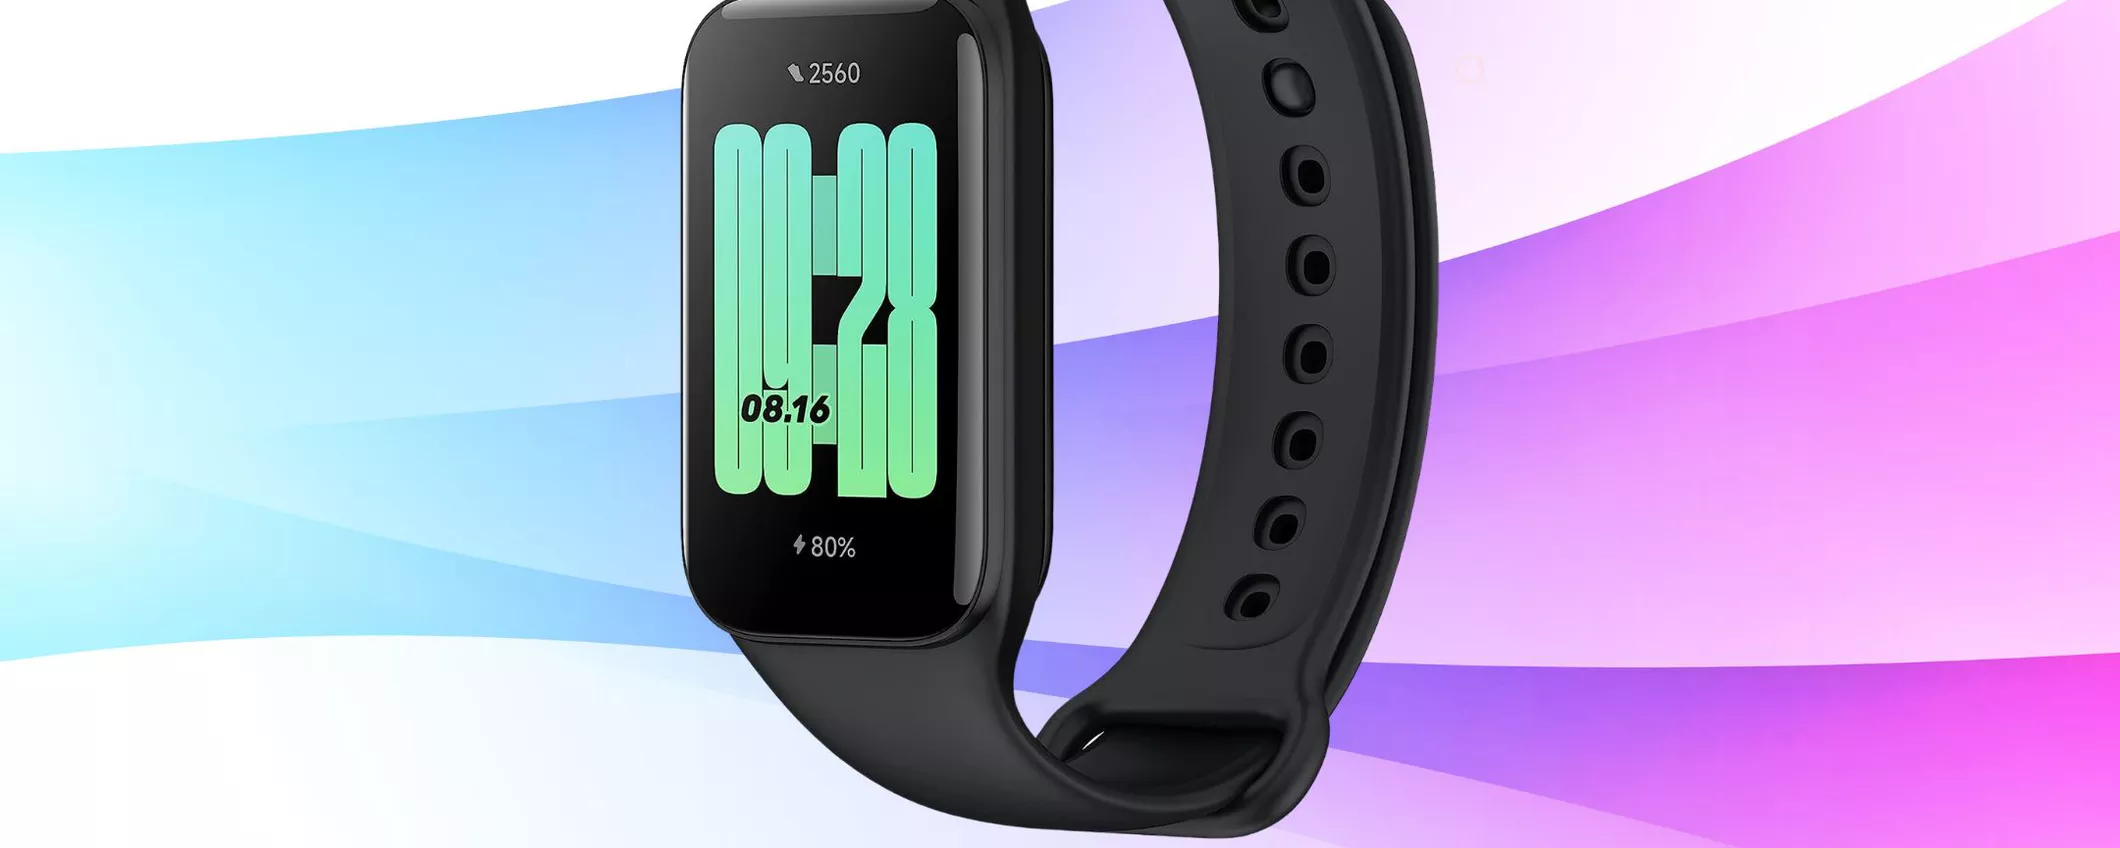 SOLO 24€ per Xiaomi Redmi Smart Band 2: lo smartwatch PERFETTO per tornare in forma